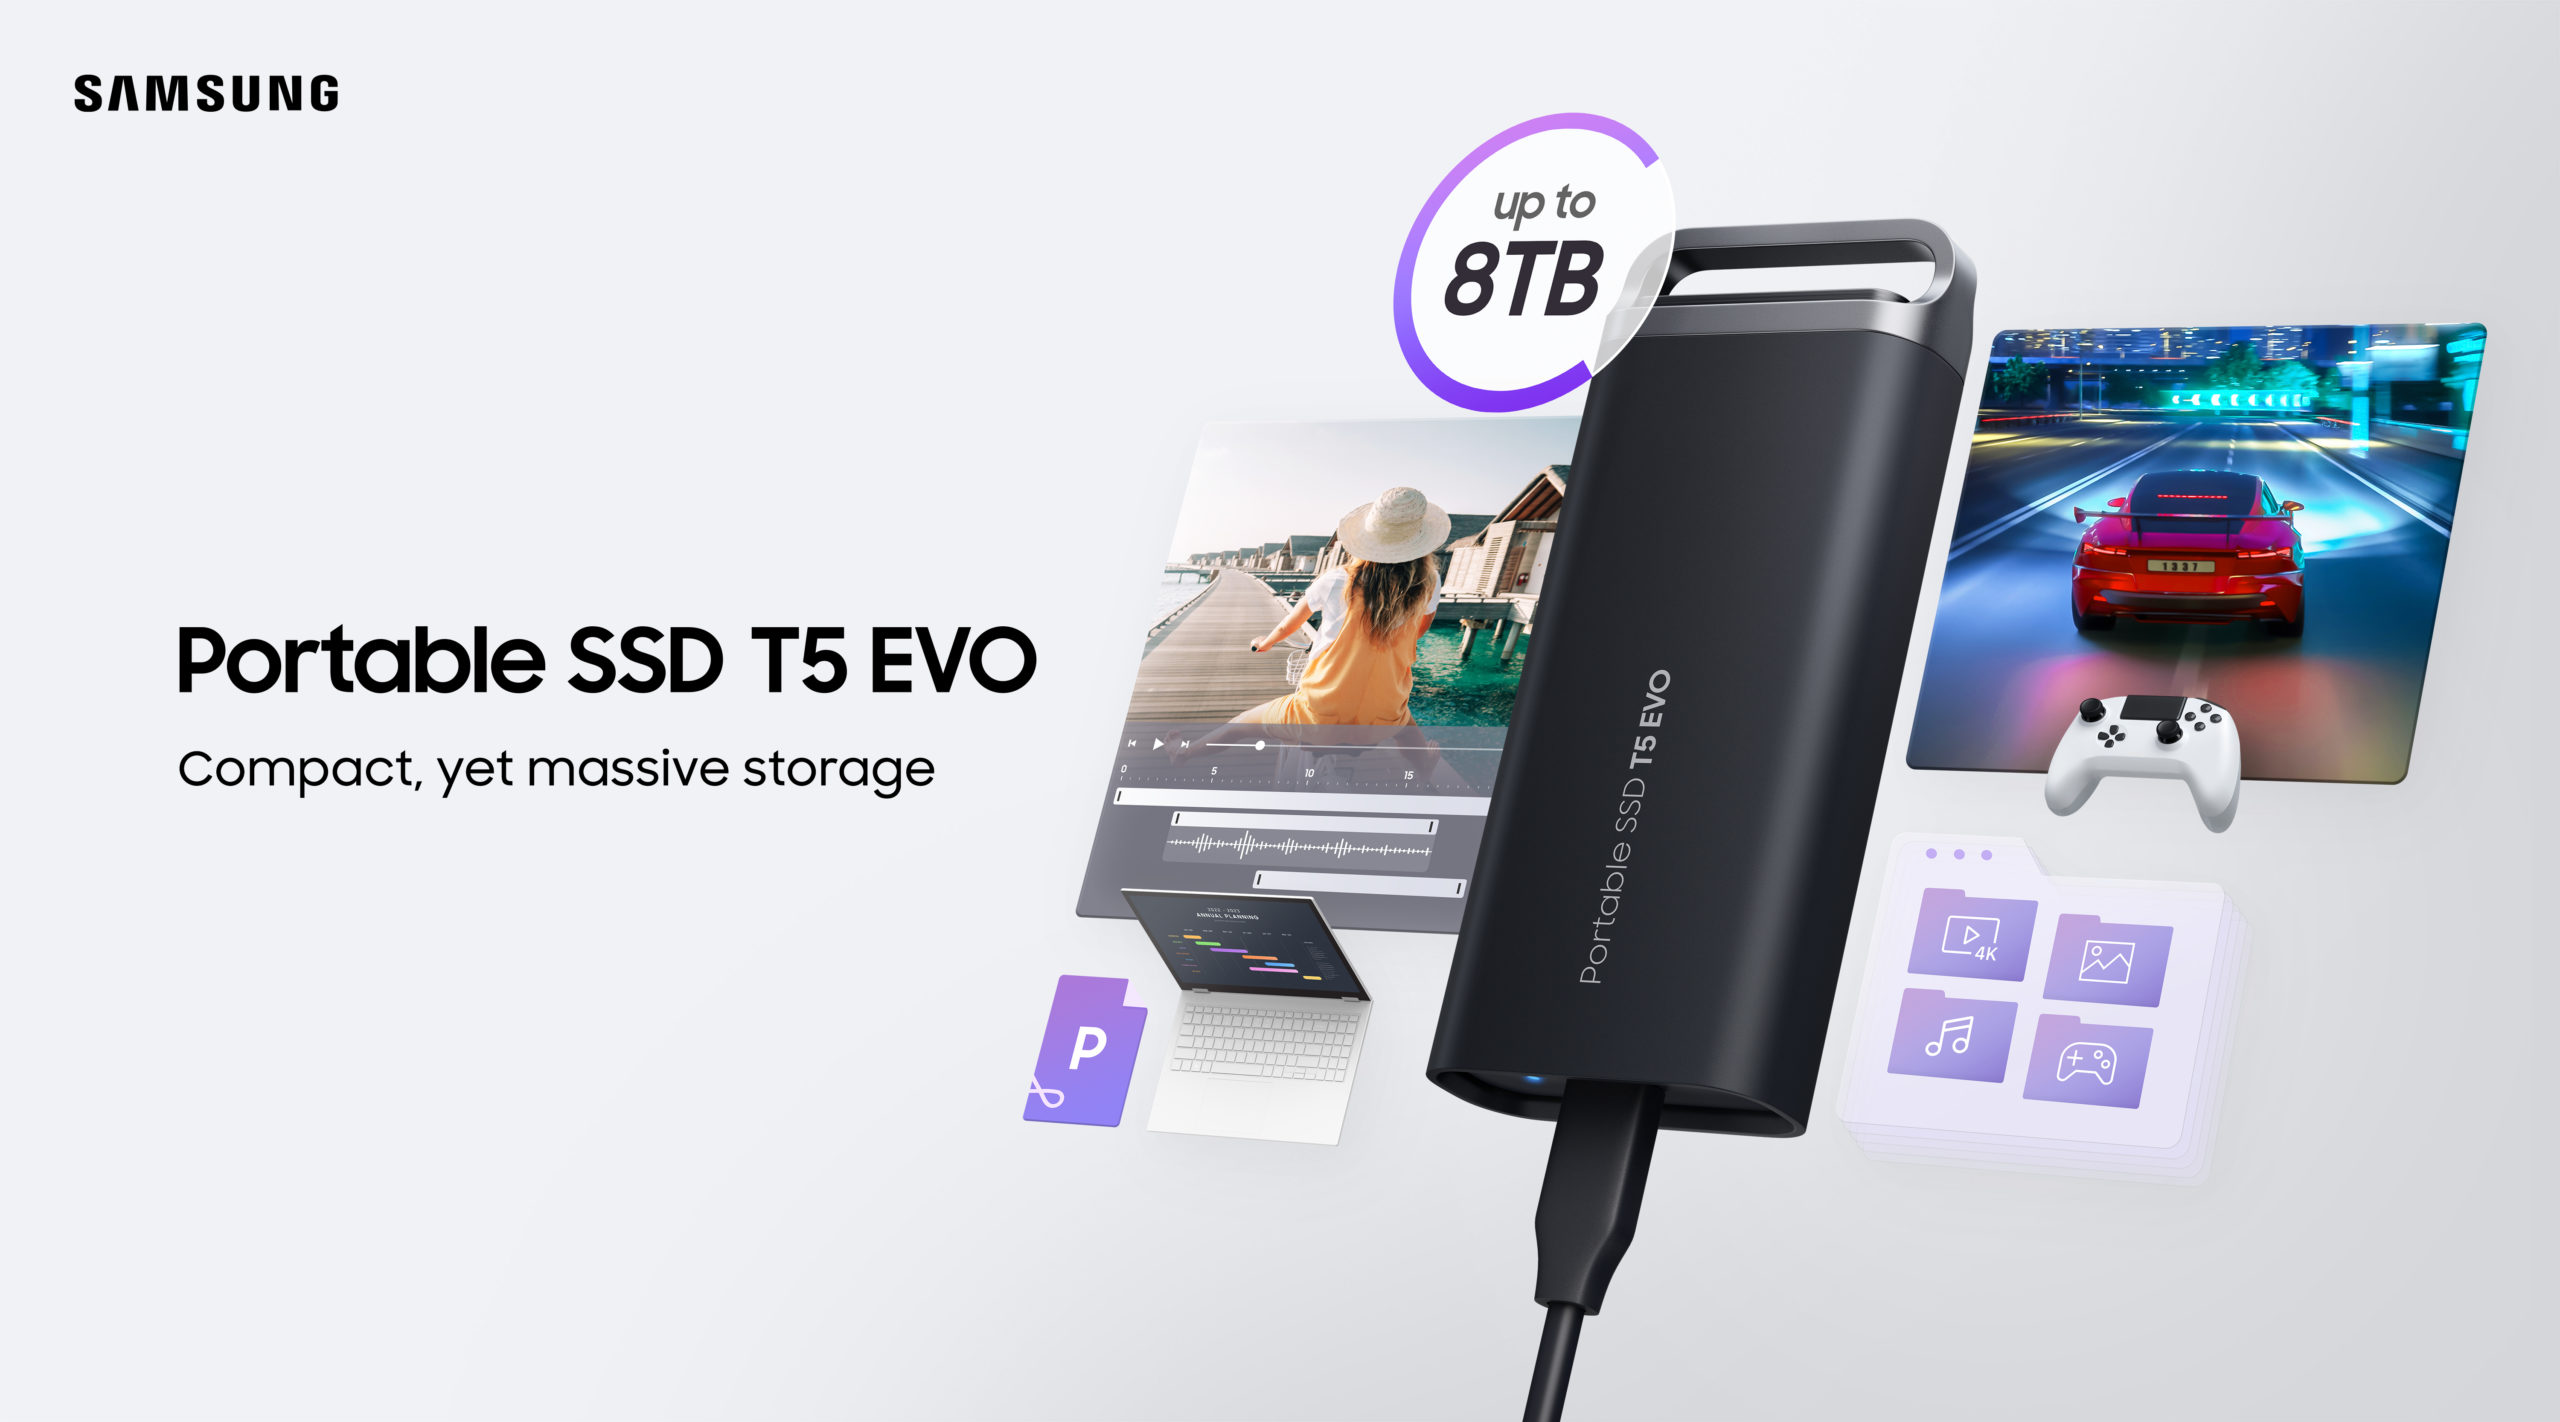 Samsung prezentuje nowy przenośny dysk SSD T5 EVO o pojemności 8 TB i kompaktowej obudowie